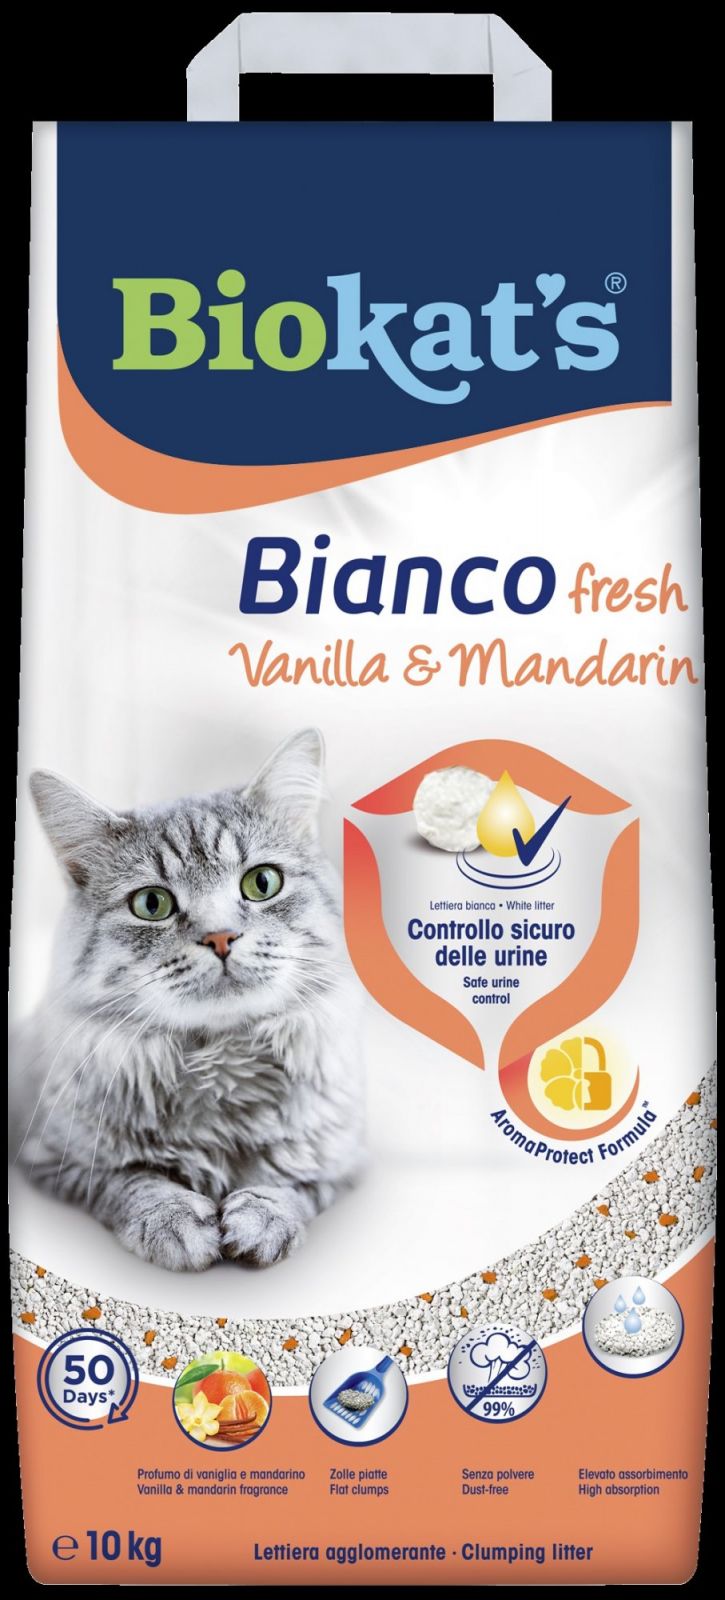 Podestýlka BIOKATS BIANCO FRESH vanilka a mandarinka 10KG Biokat´s